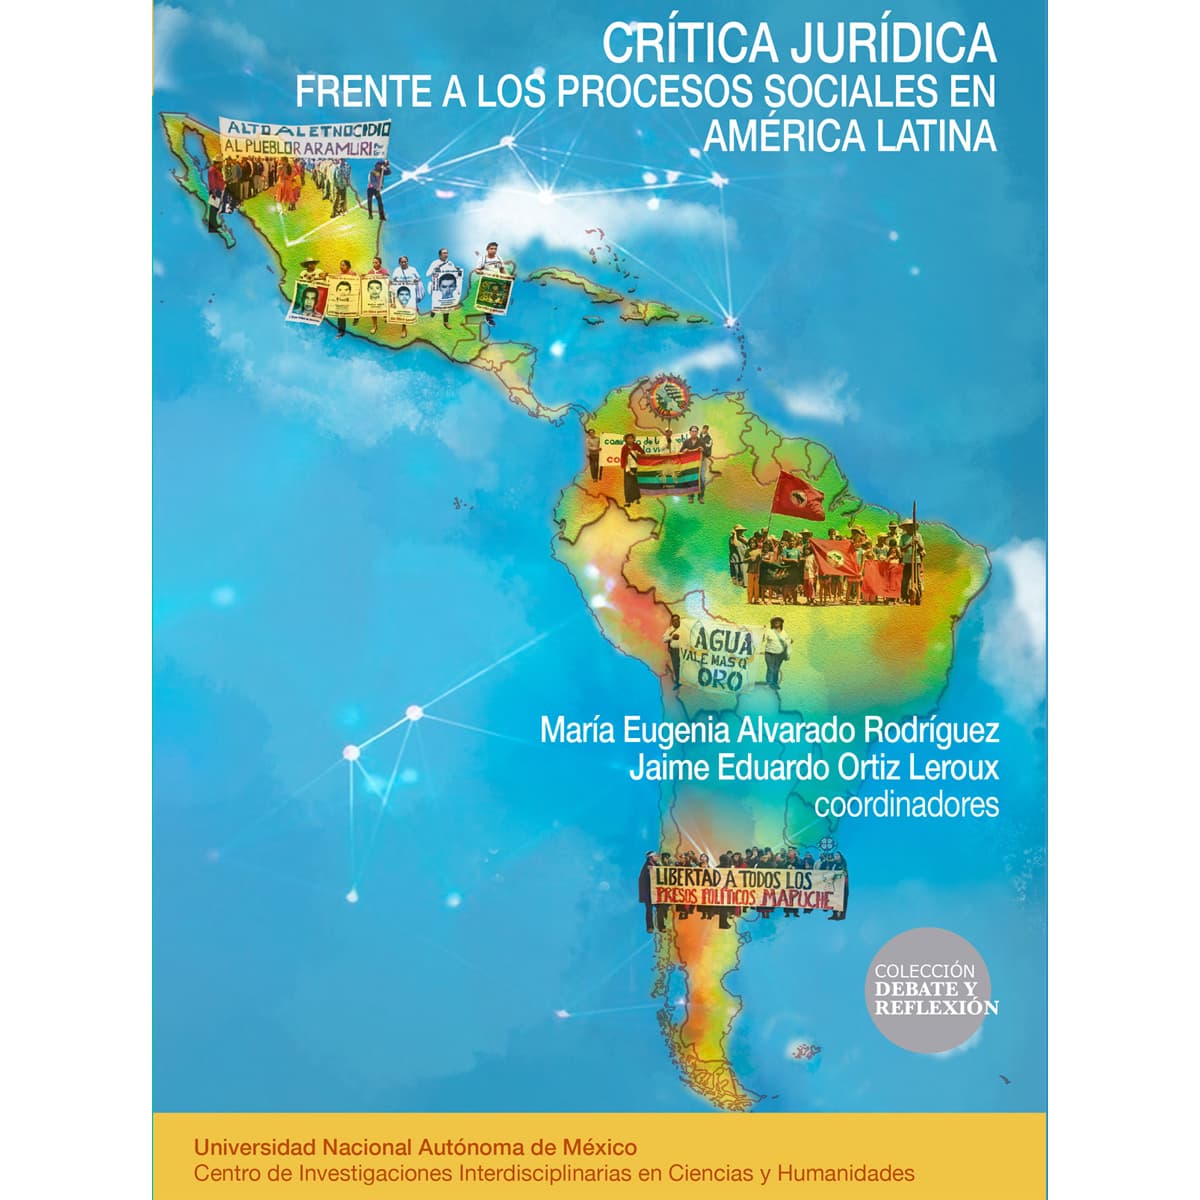 CRÍTICA JURÍDICA. FRENTE A LOS PROCESOS SOCIALES EN AMÉRICA LATINA